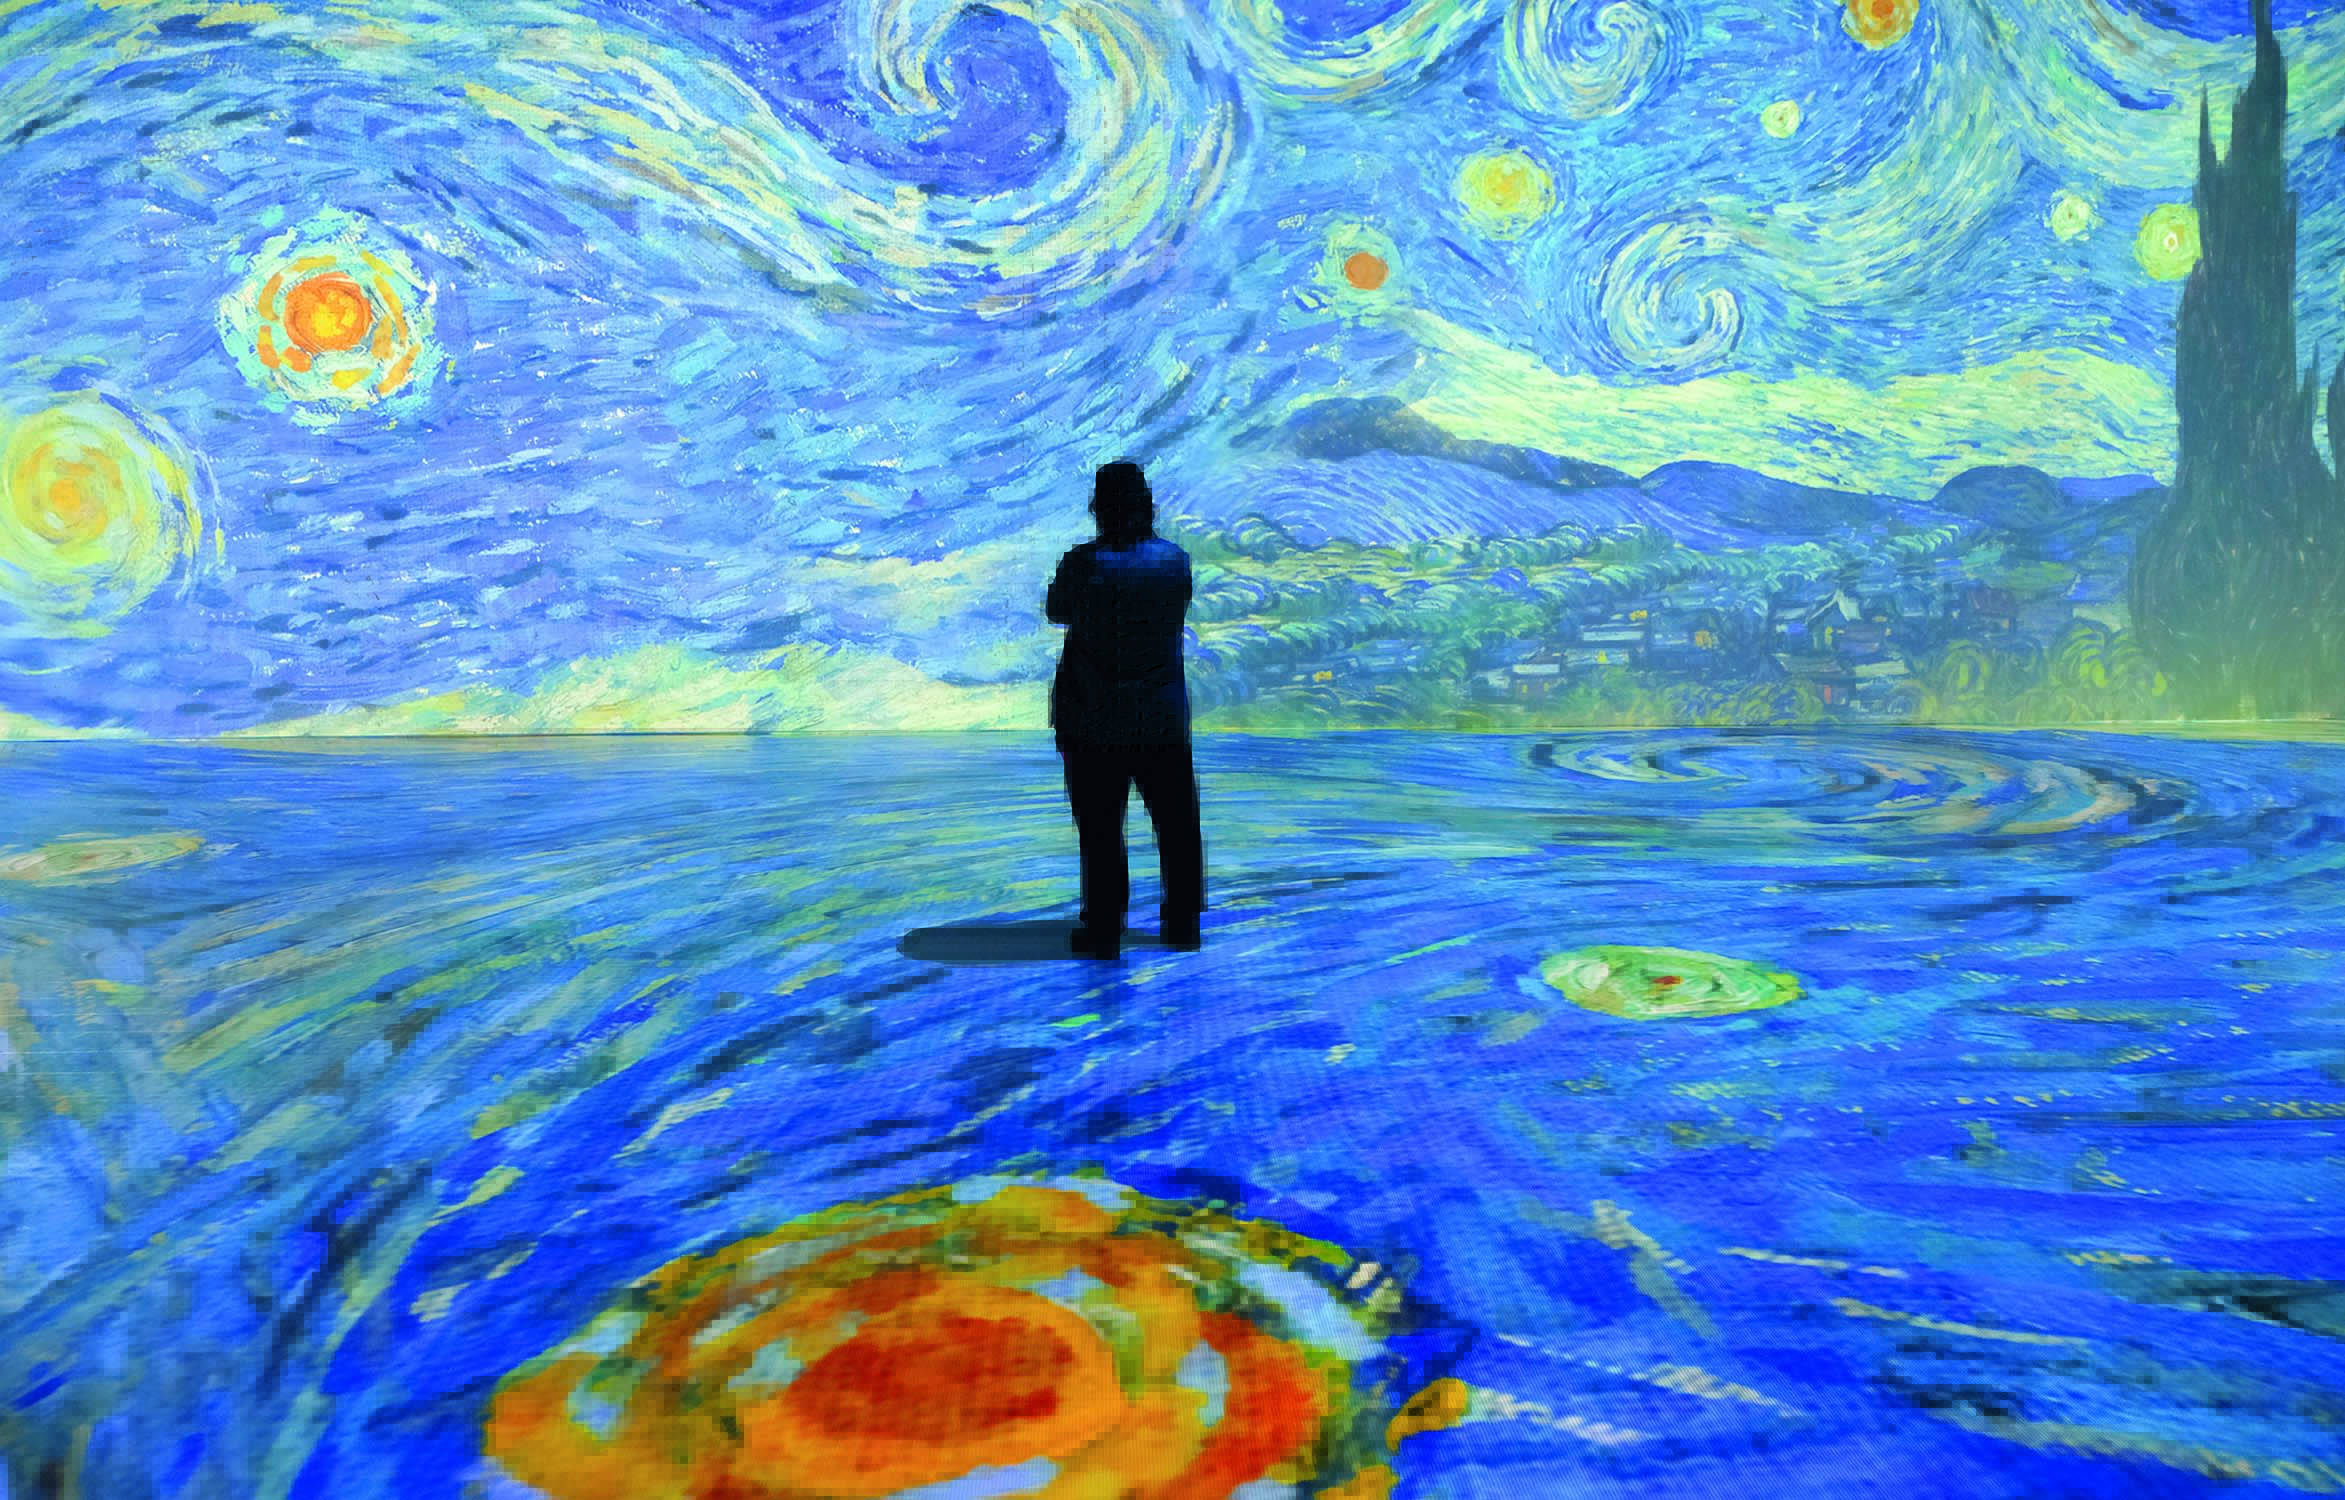 Imagem mostra salão com pintura projetada no chão e na parede. Uma pessoa em pé está no centro da imagem, de costas.